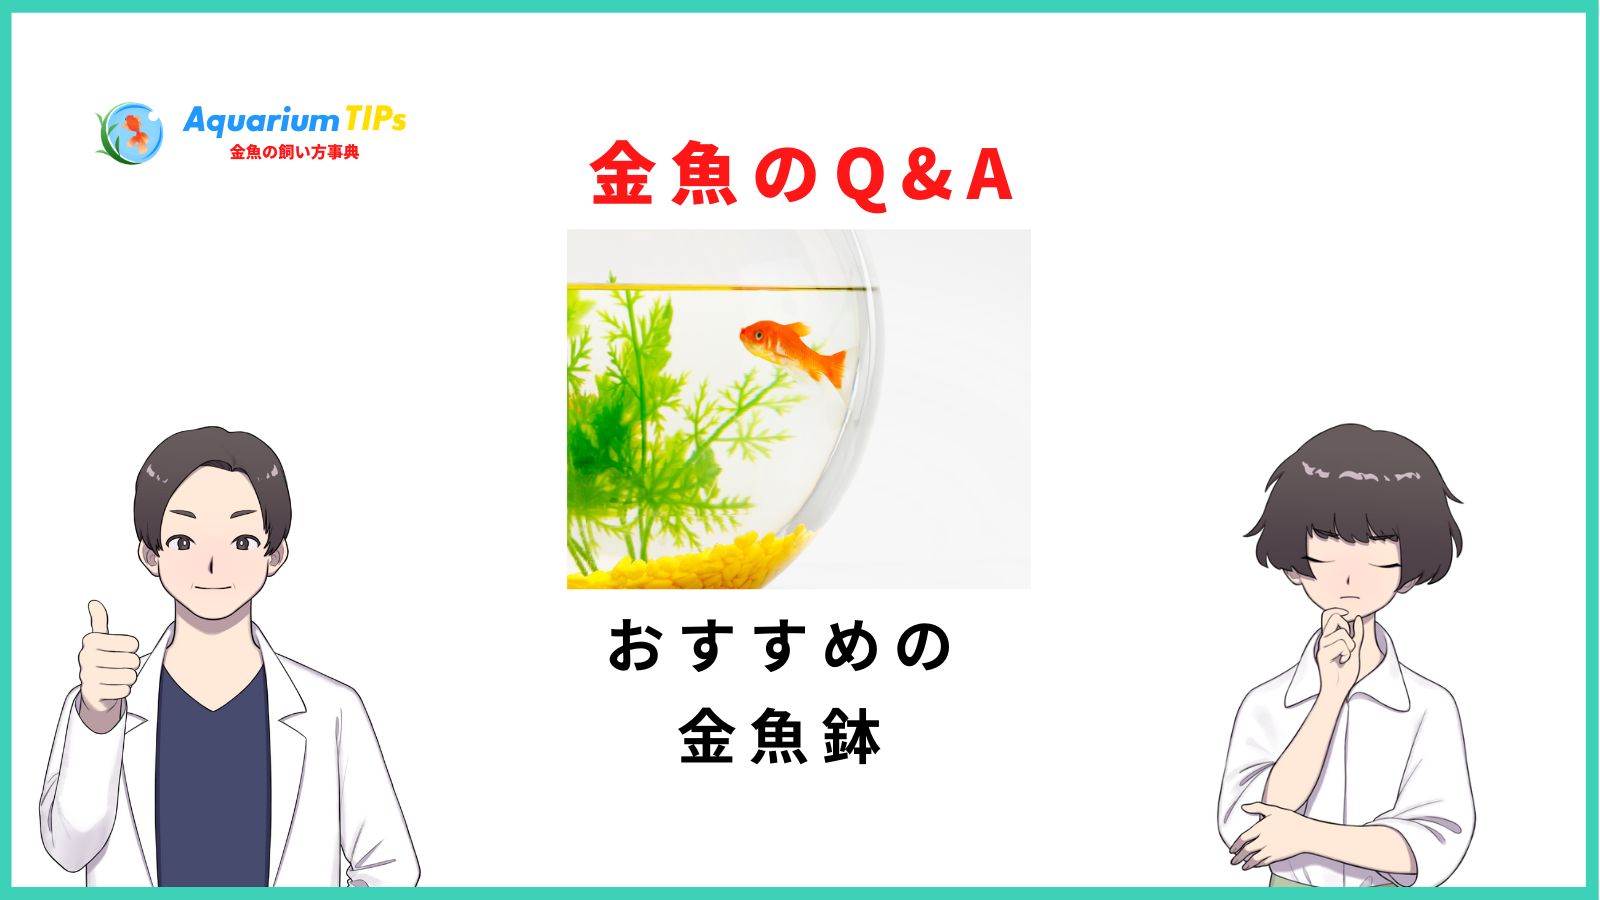 おすすめの金魚鉢(おしゃれ/レトロ/和風)人気18選 | アクアリウムTIPS 